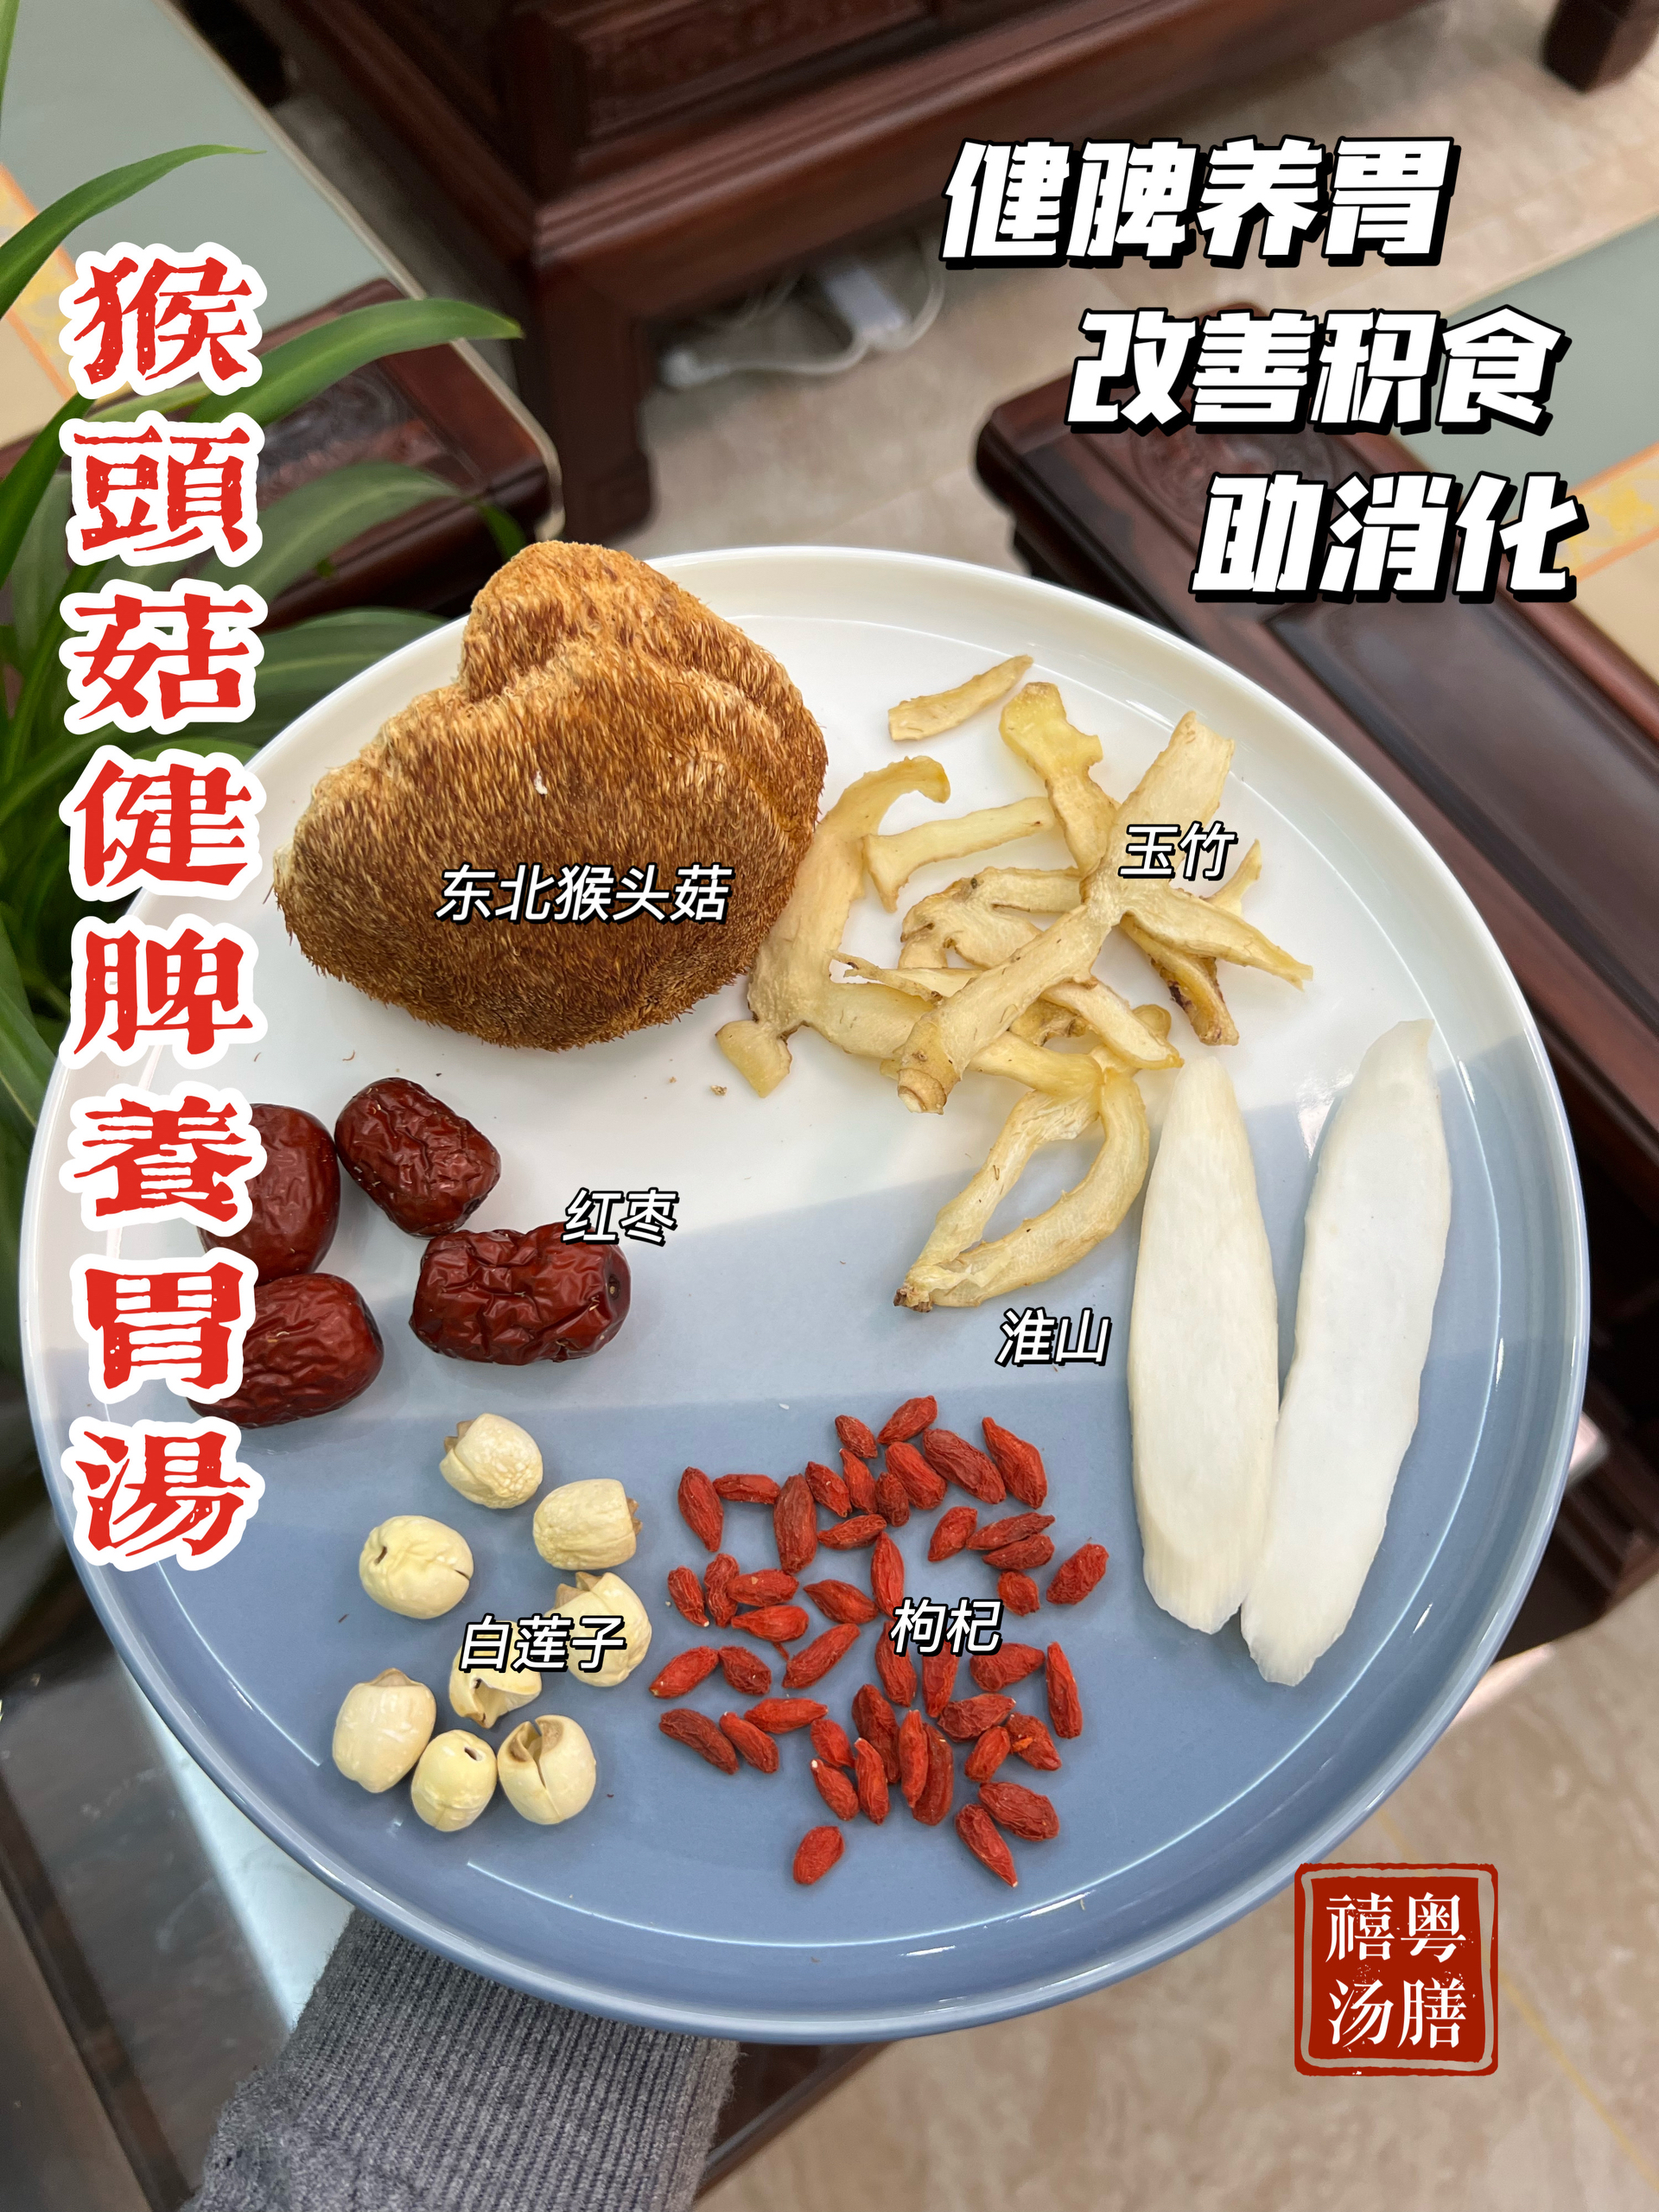 猴头菇养胃汤的做法